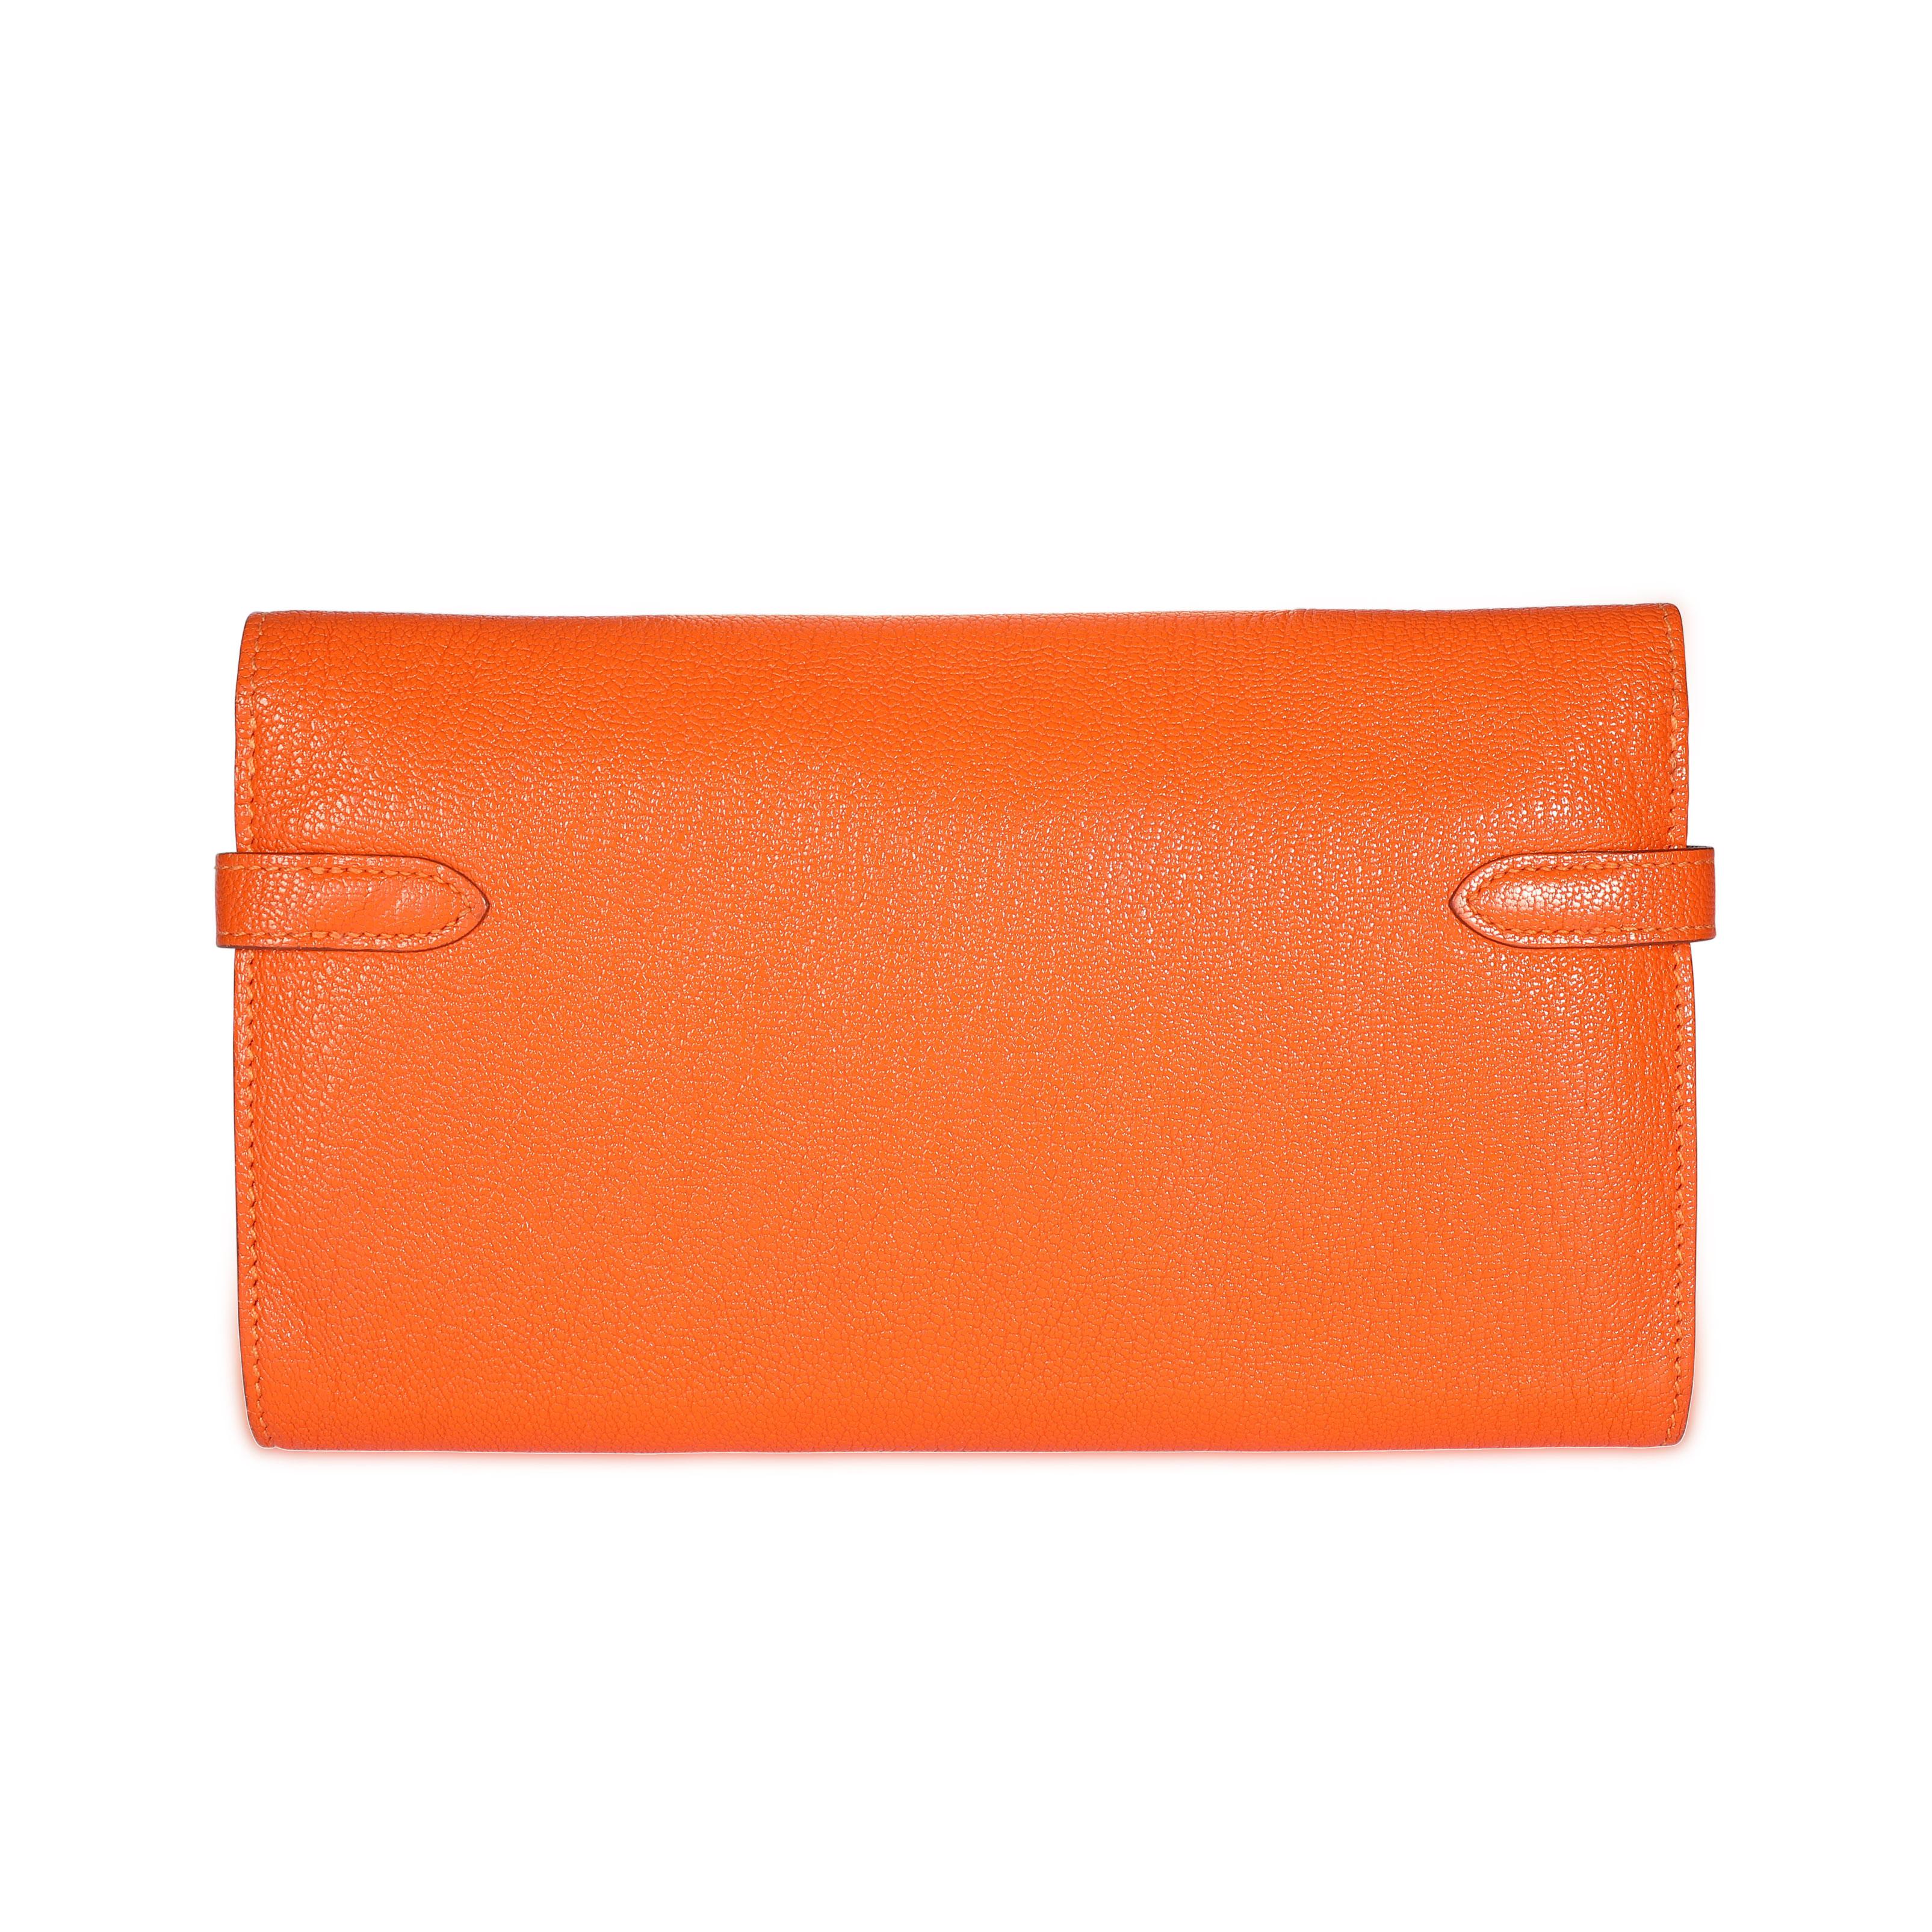 Hermès Orange Chévre Mysore Kelly Wallet with Palladium Hardware For ...